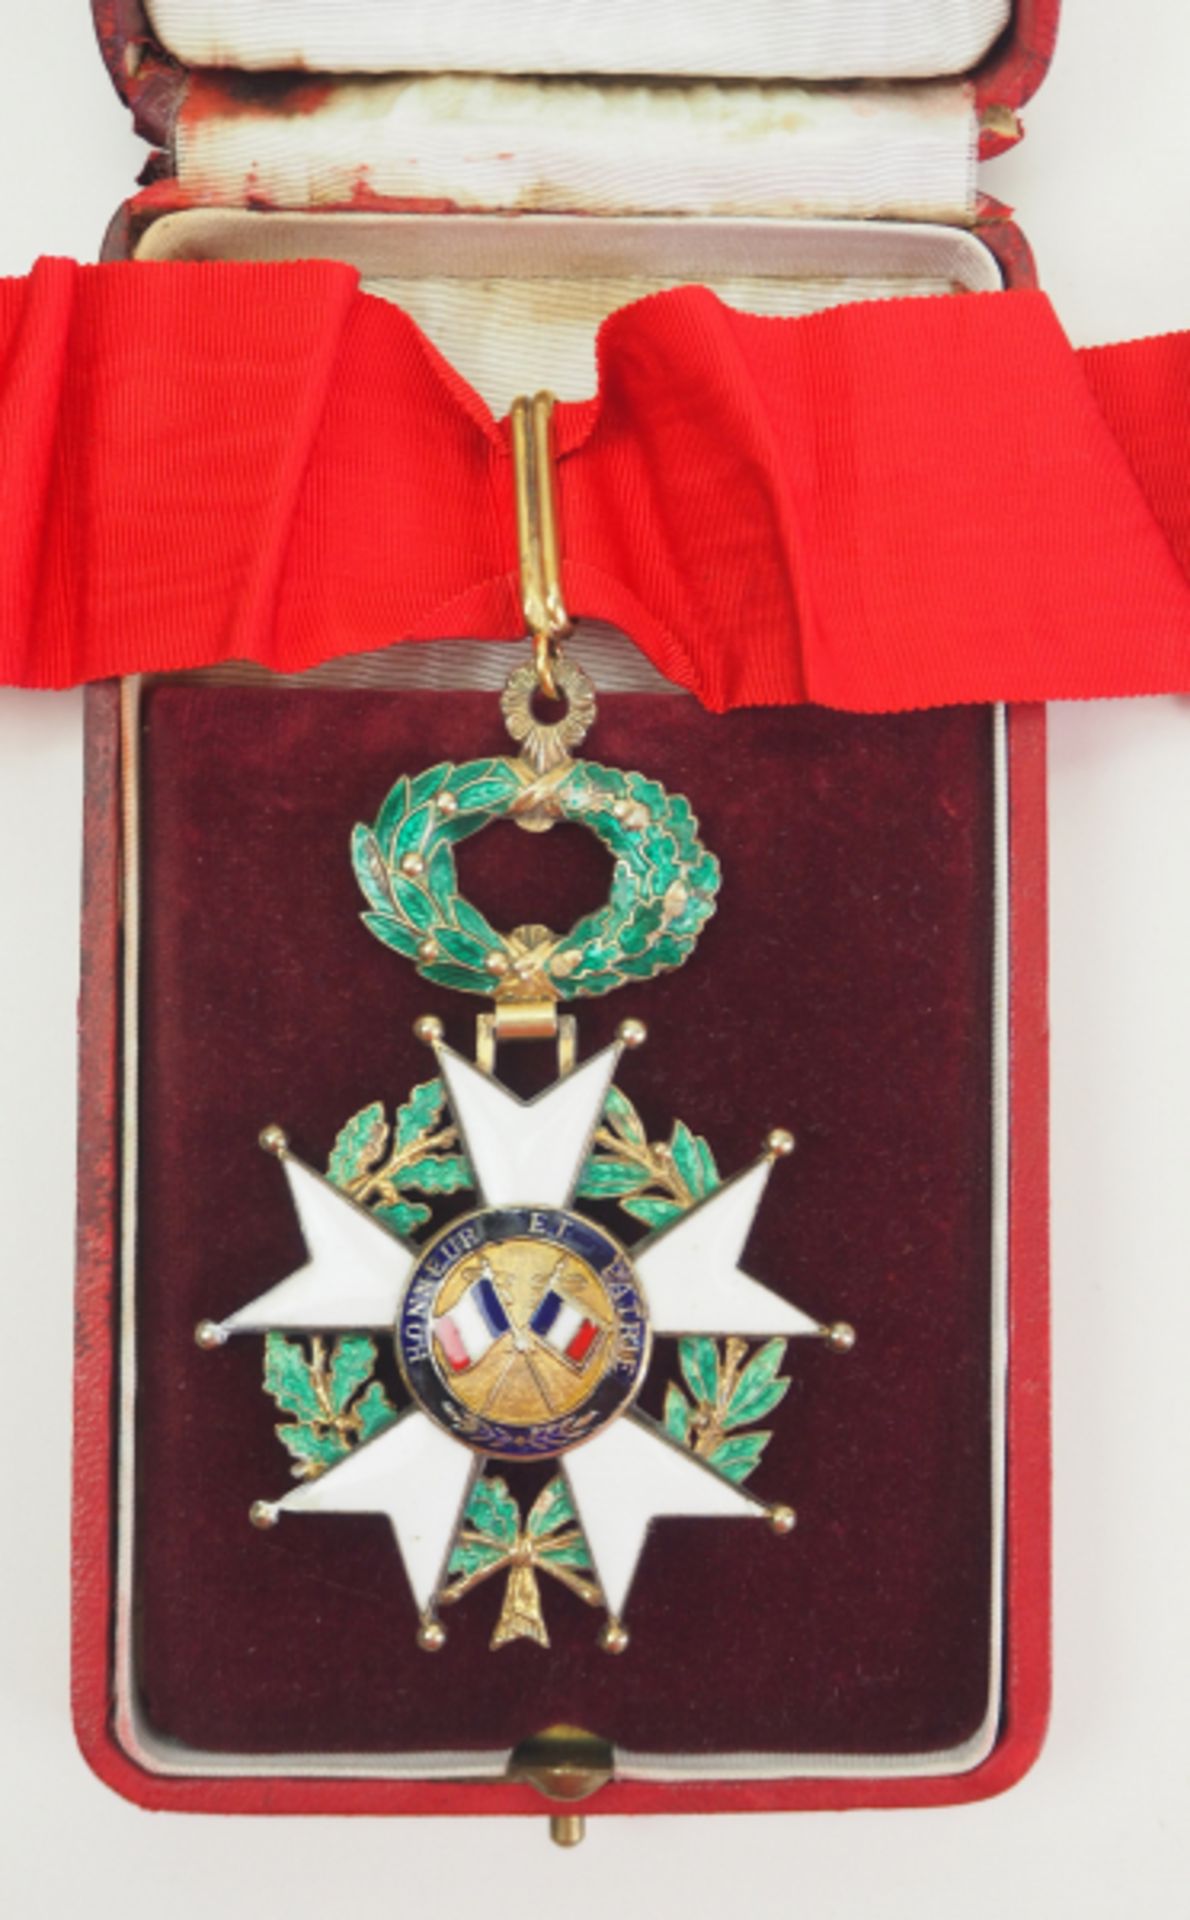 Frankreich: Orden der Ehrenlegion, 11. Modell (seit 1962), Komturkreuz, im Etui.Silber vergoldet, - Image 3 of 3